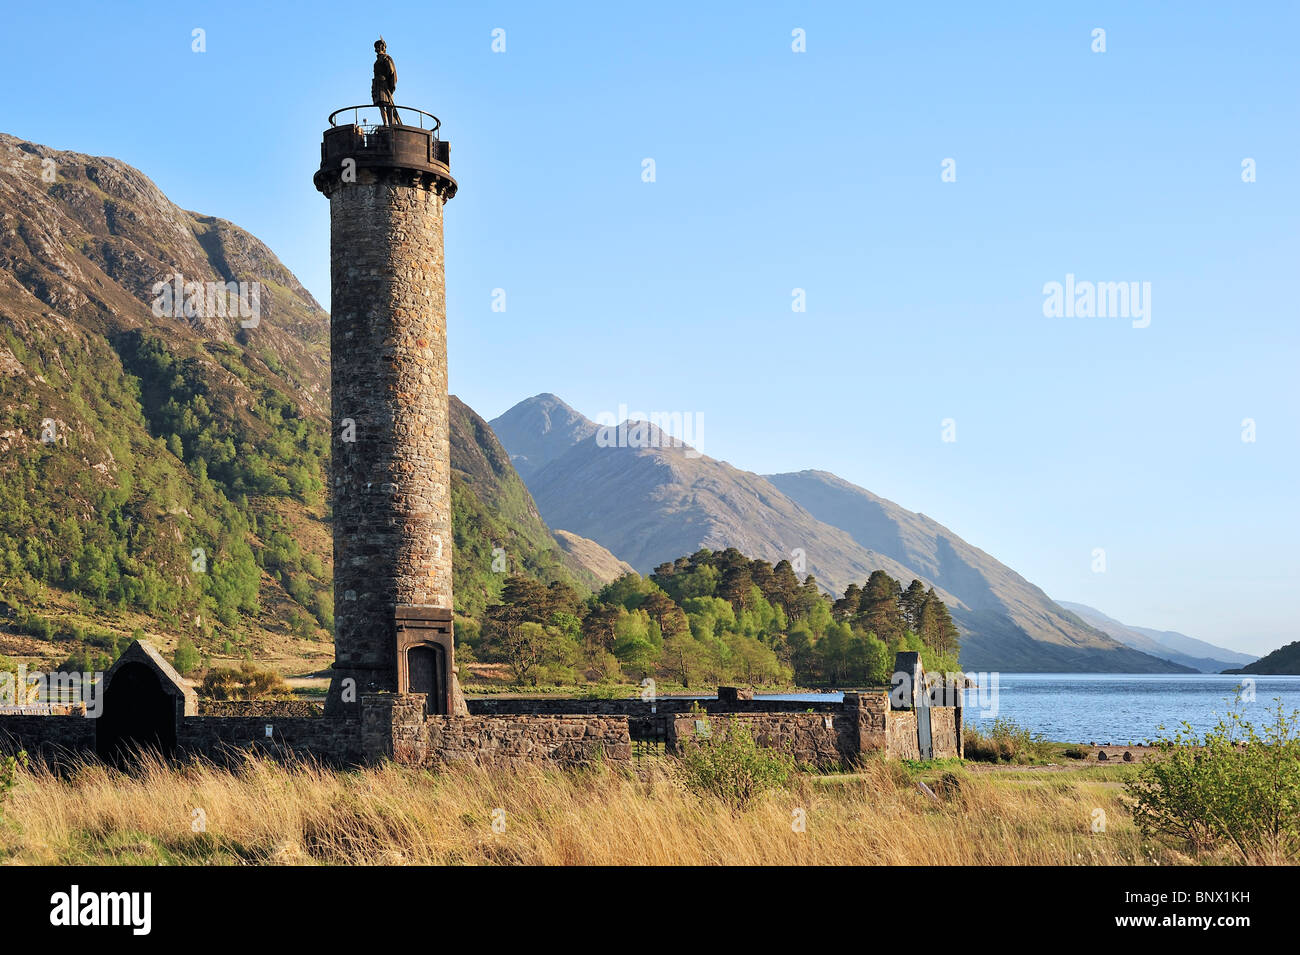 Das Glenfinnan Monument an den Ufern des Loch Shiel, errichtet im Jahre 1815, Lochaber, Highlands, Schottland, Vereinigtes Königreich Stockfoto